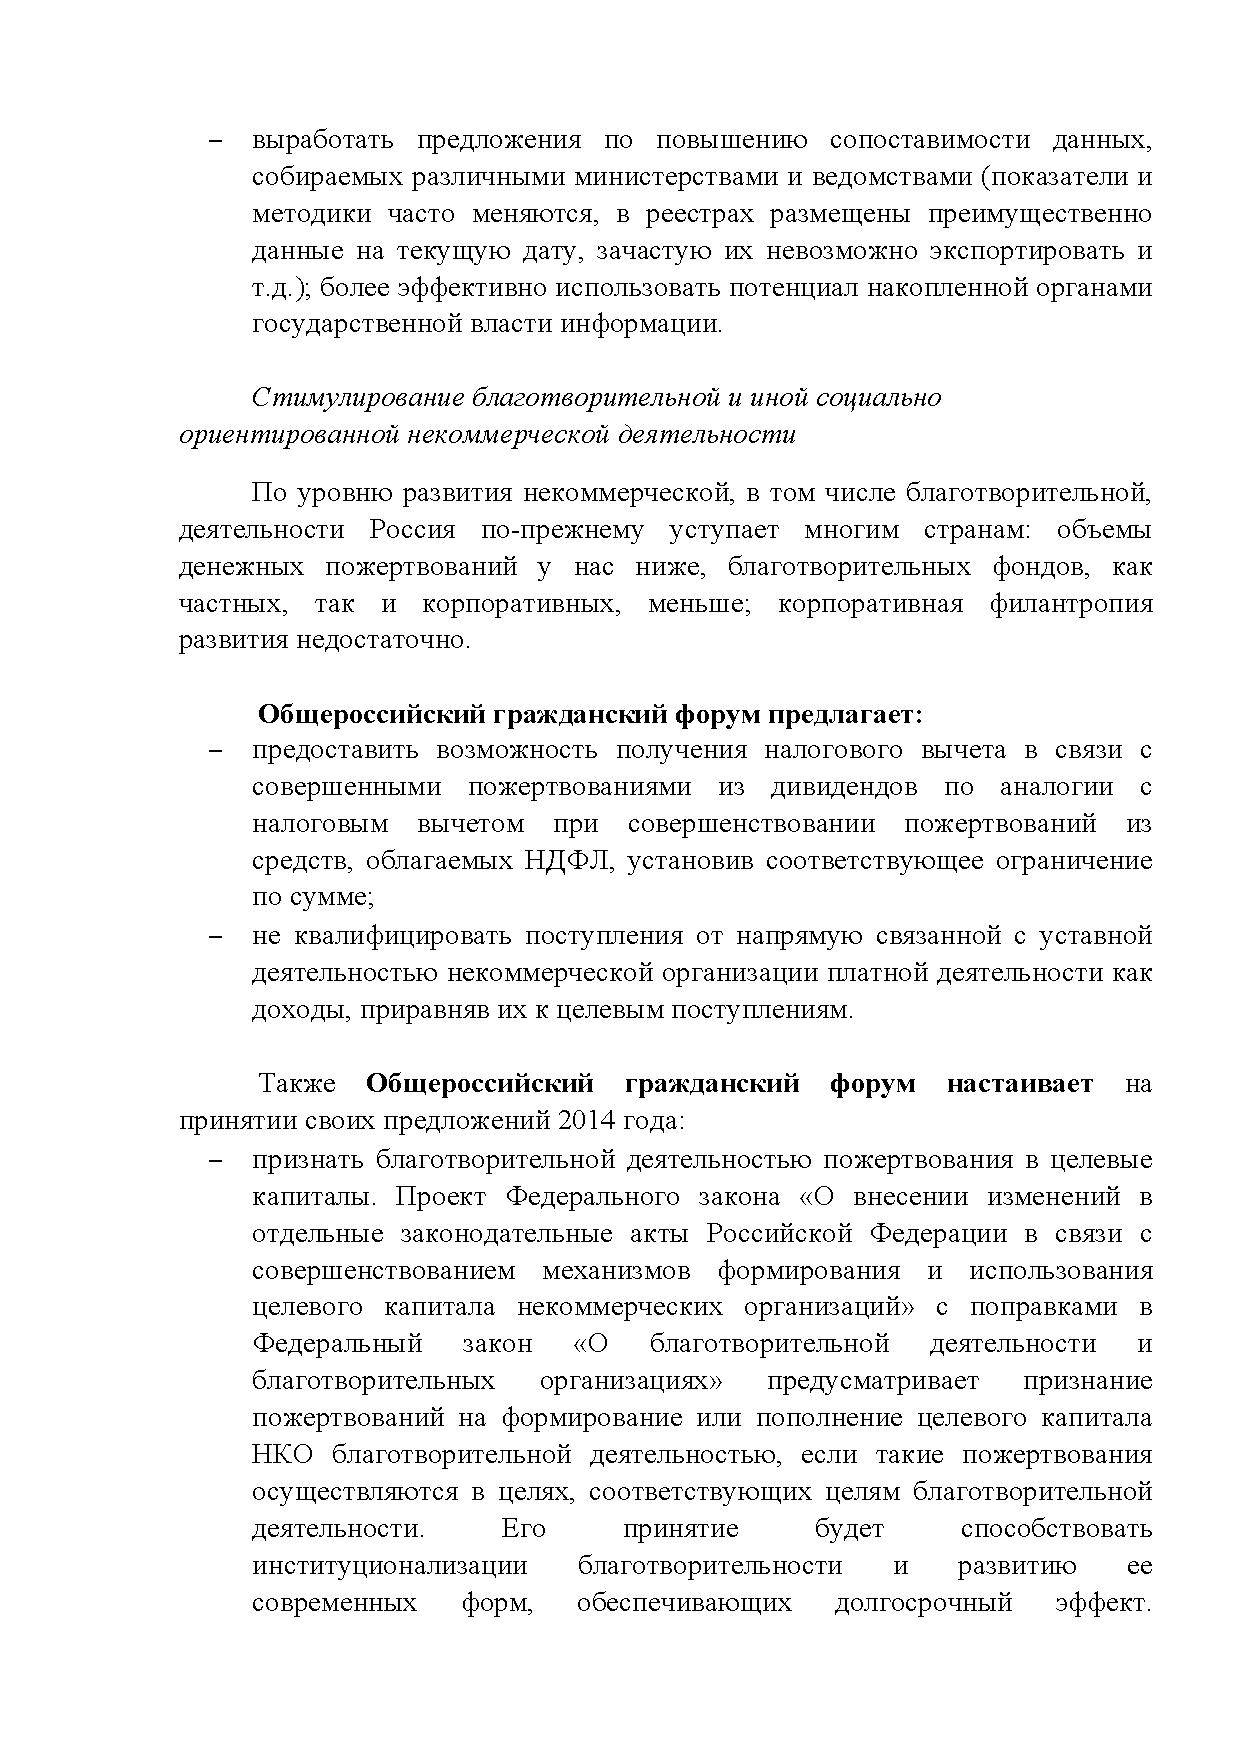  Опубликованы Предложения Общероссийского гражданского форума 2015 - фото 9